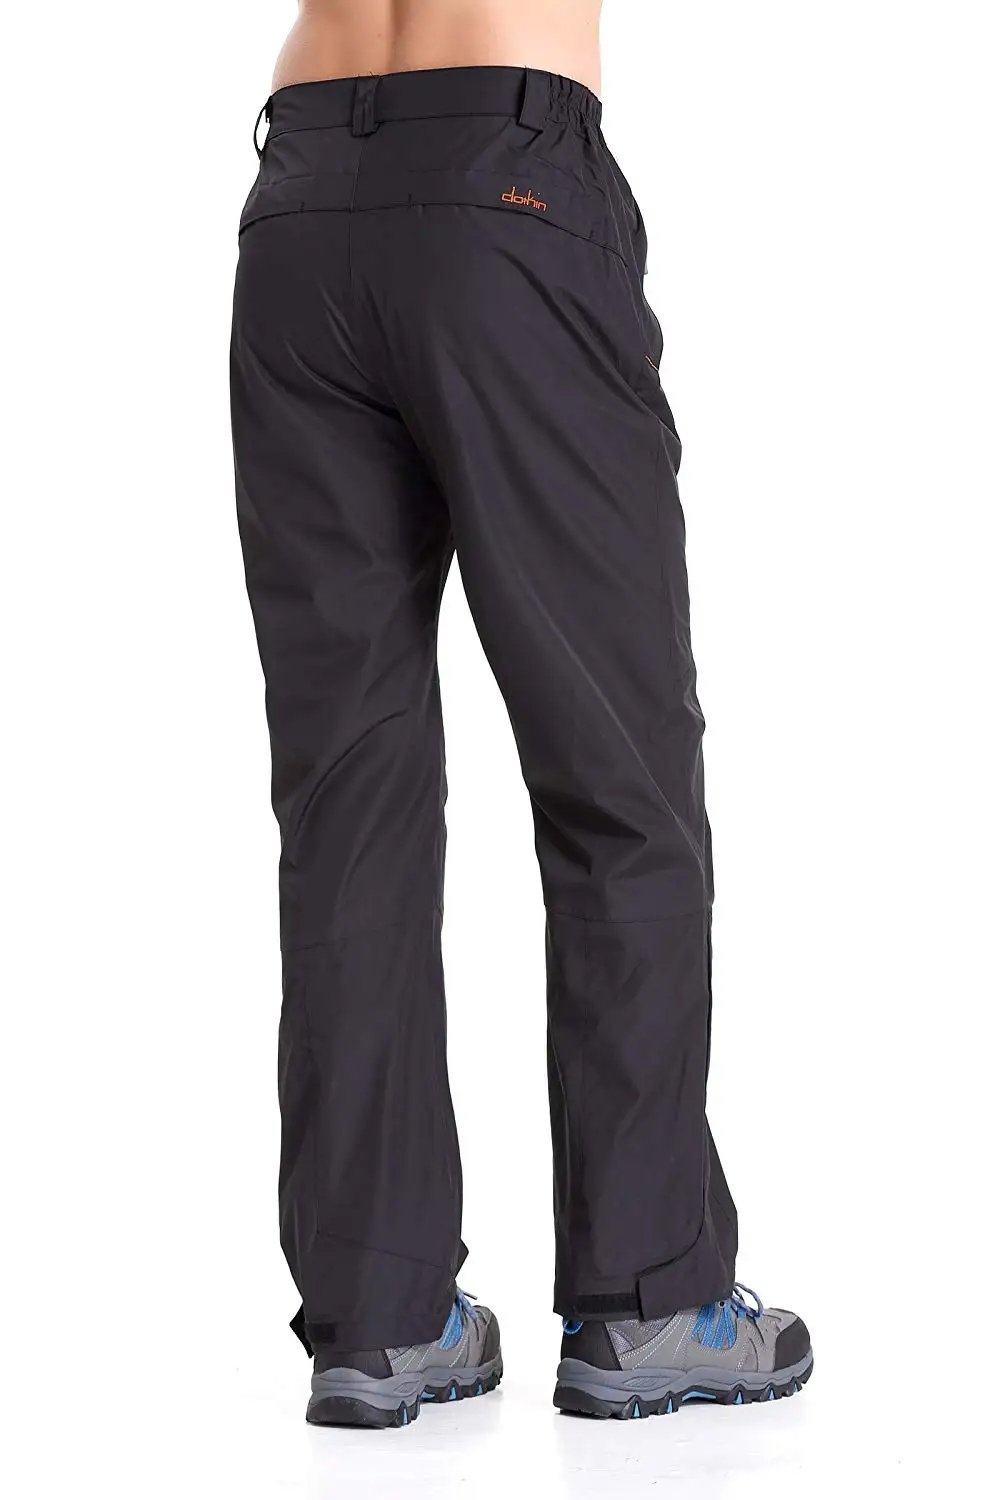 Clothin мужские зимние лыжные штаны для сноуборда, брюки-карго, теплые флисовые брюки с подкладкой, водонепроницаемые штаны с эластичной резинкой на талии 1201M@ US размер